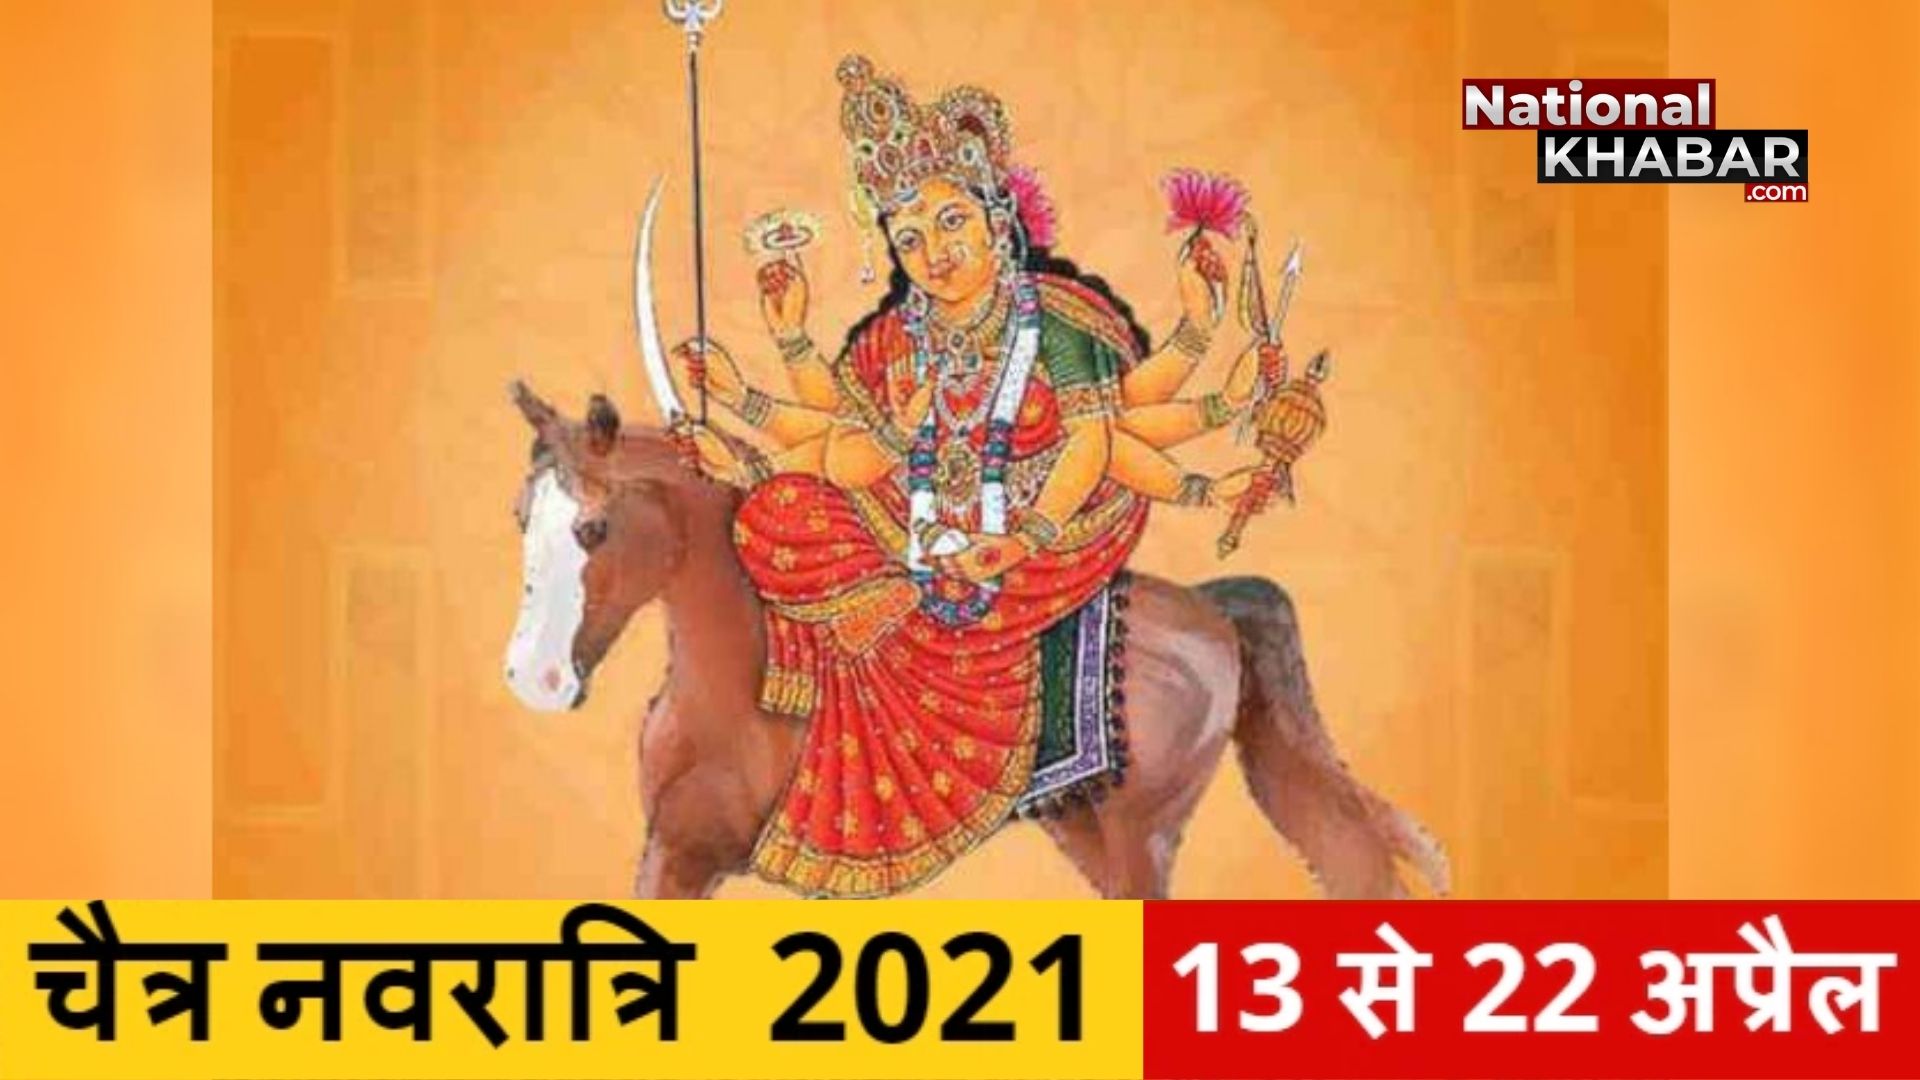 Chaitra Navratri 2021: कब से शुरू हो रहे हैं चैत्र नवरात्रि, जानें इस बार मां दुर्गा किस वाहन पर सवार होकर आ रही हैं